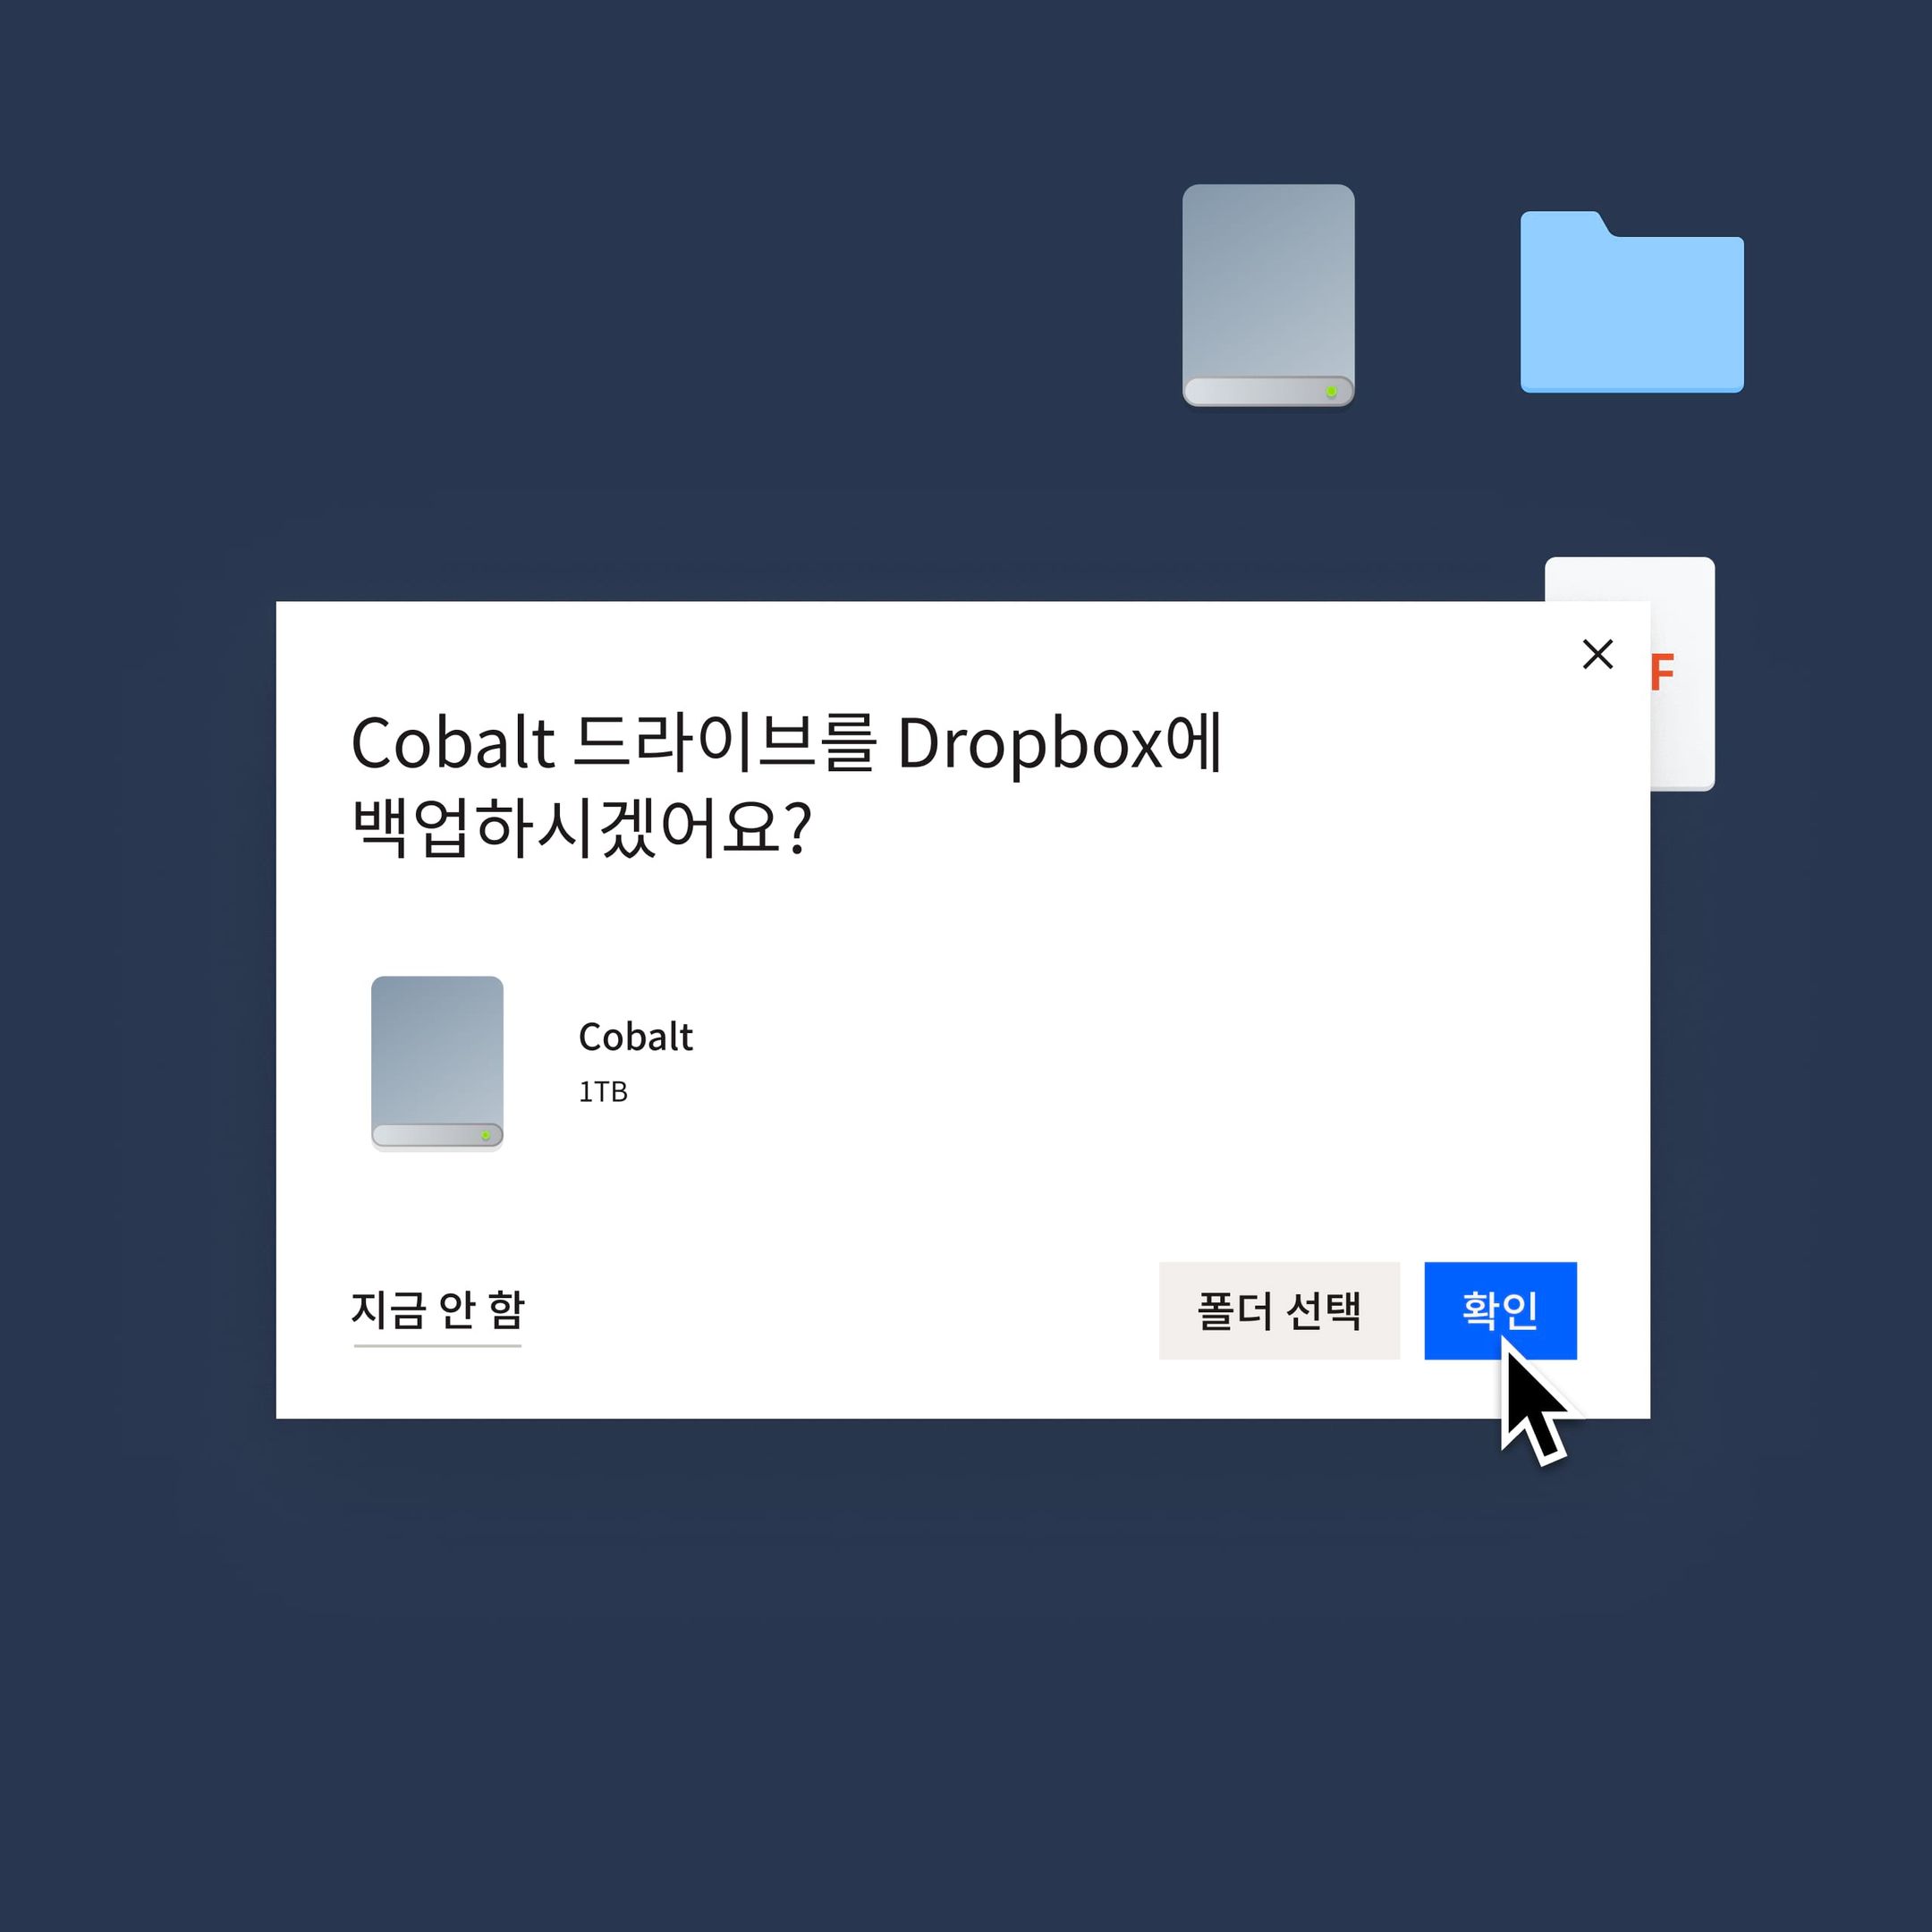 Cobalt 드라이브를 Dropbox에 백업하기 위해 파란색 '확인' 버튼을 클릭하는 사용자